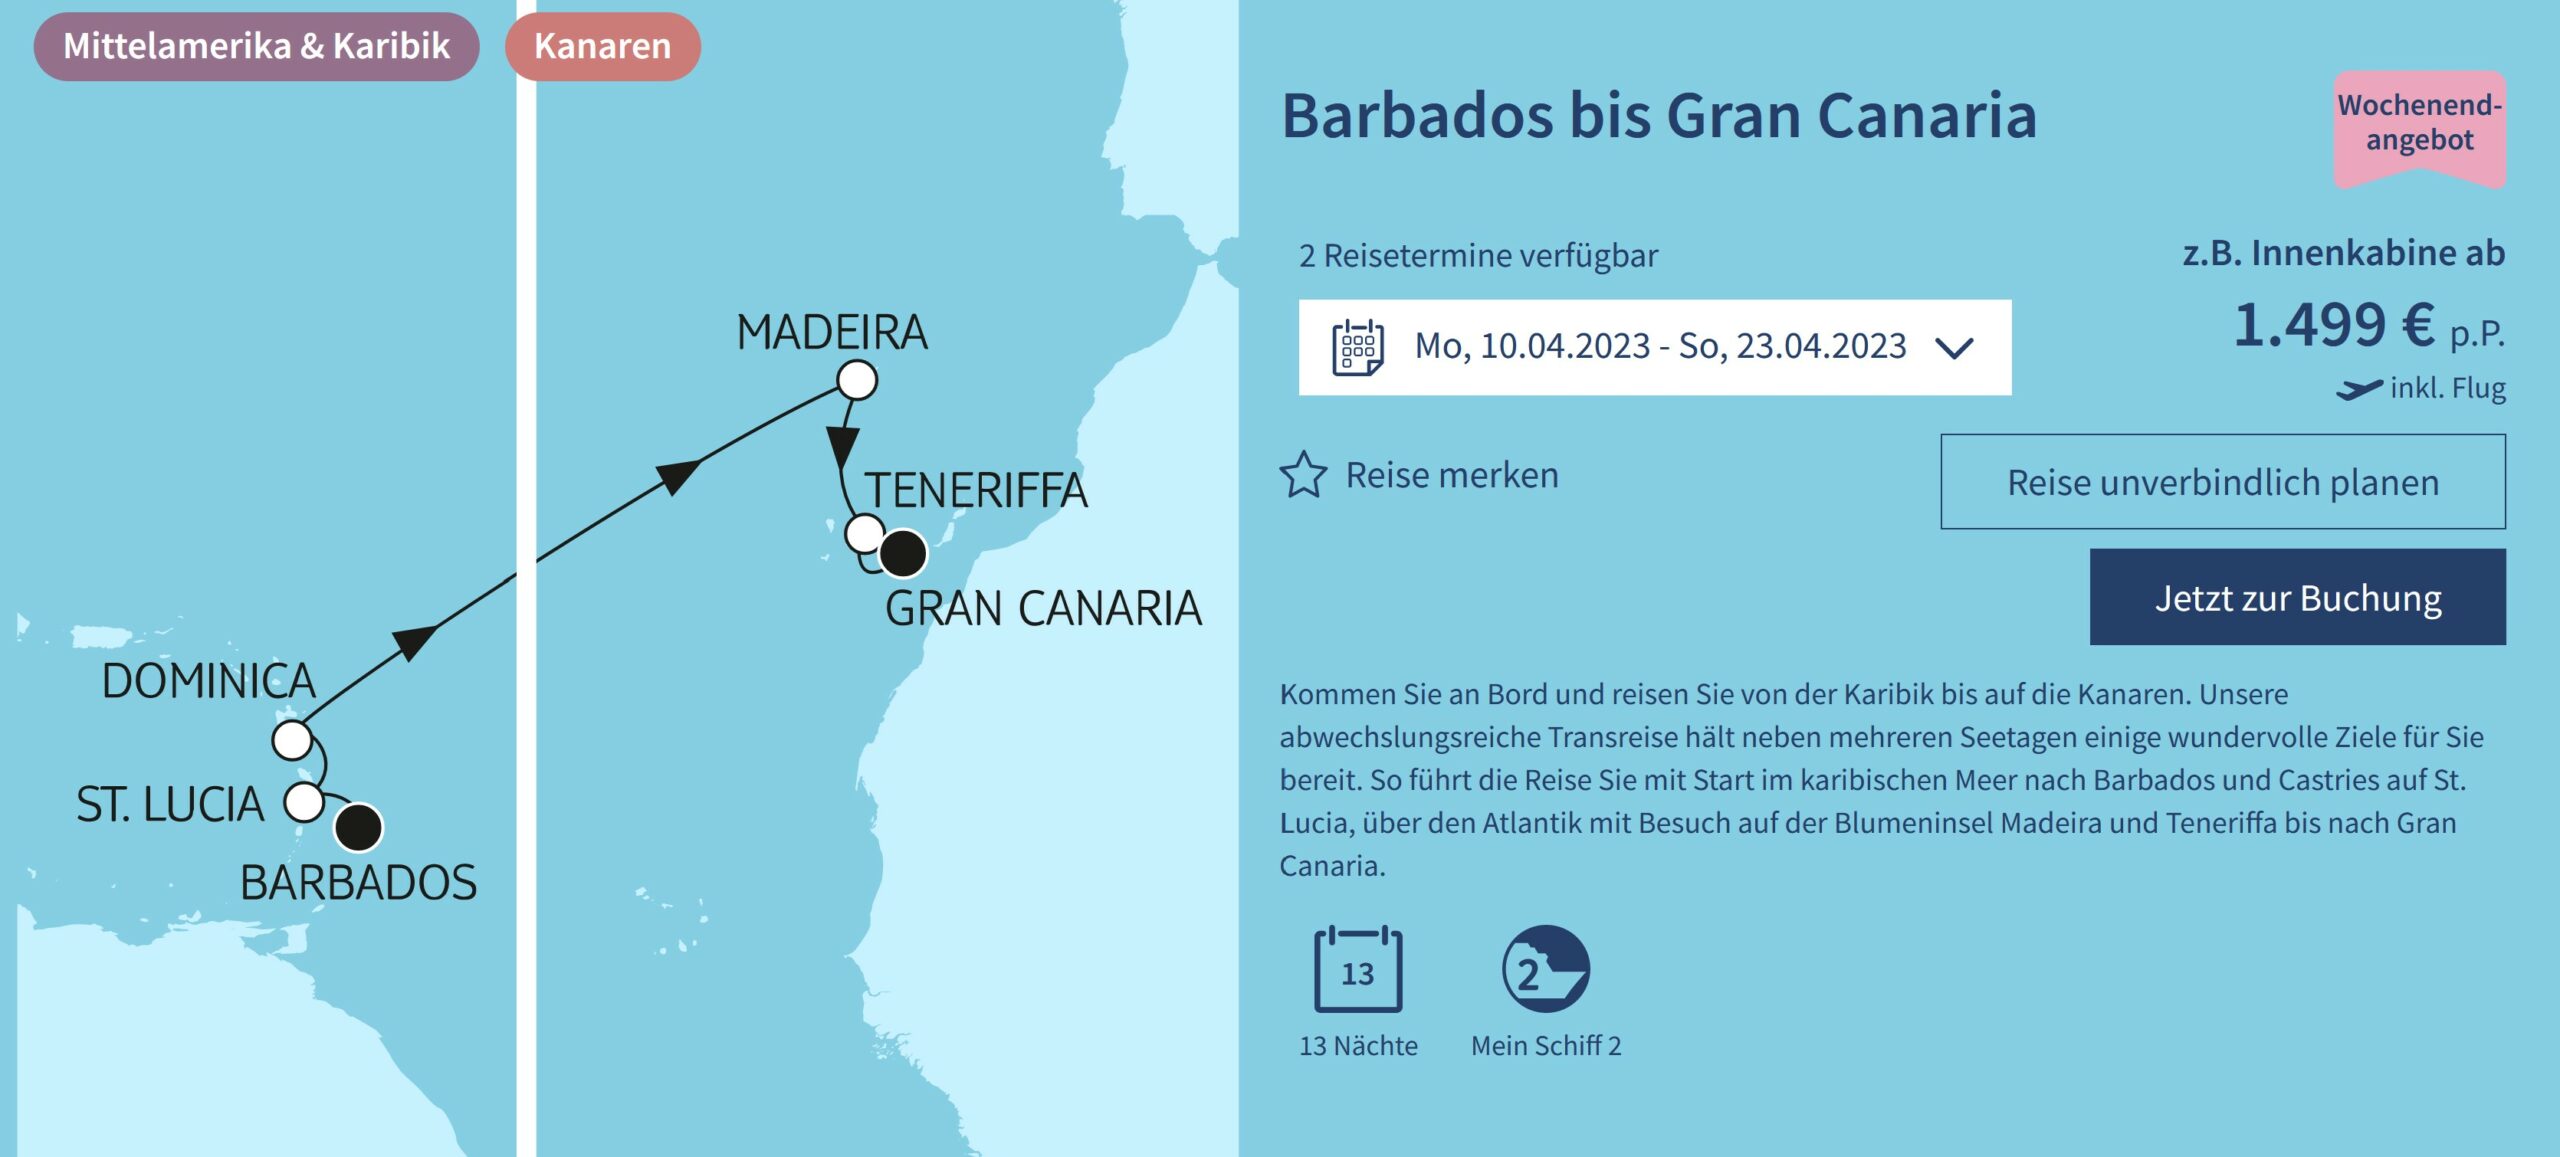 Screenshot Barbados bis Gran Canaria mit Mein Schiff